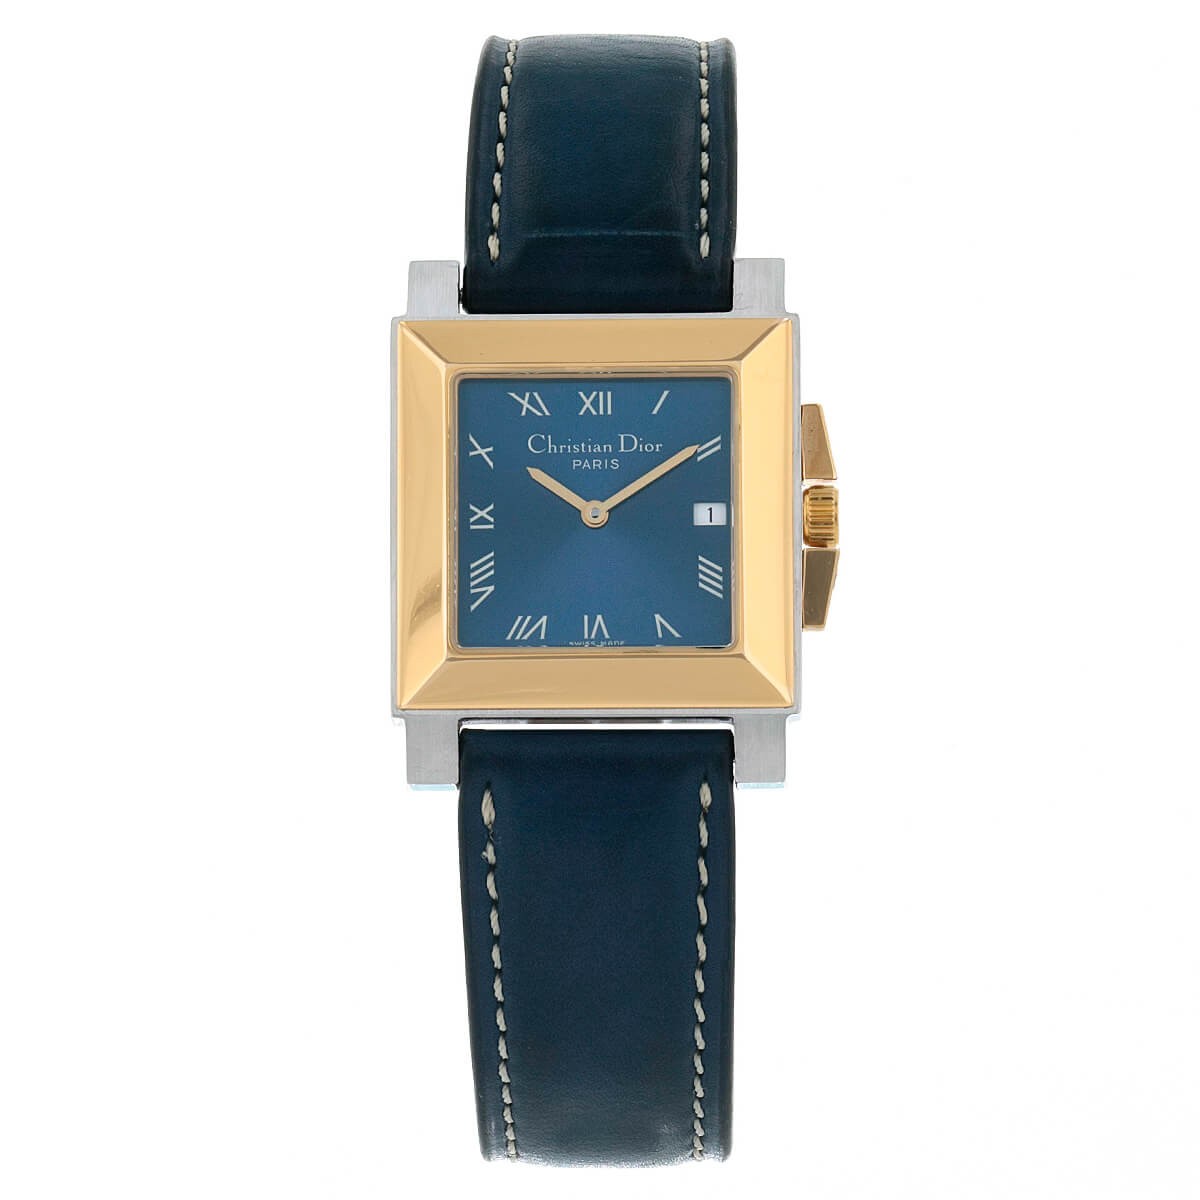 7 bracelets de montre emblématiques - Mr Montre